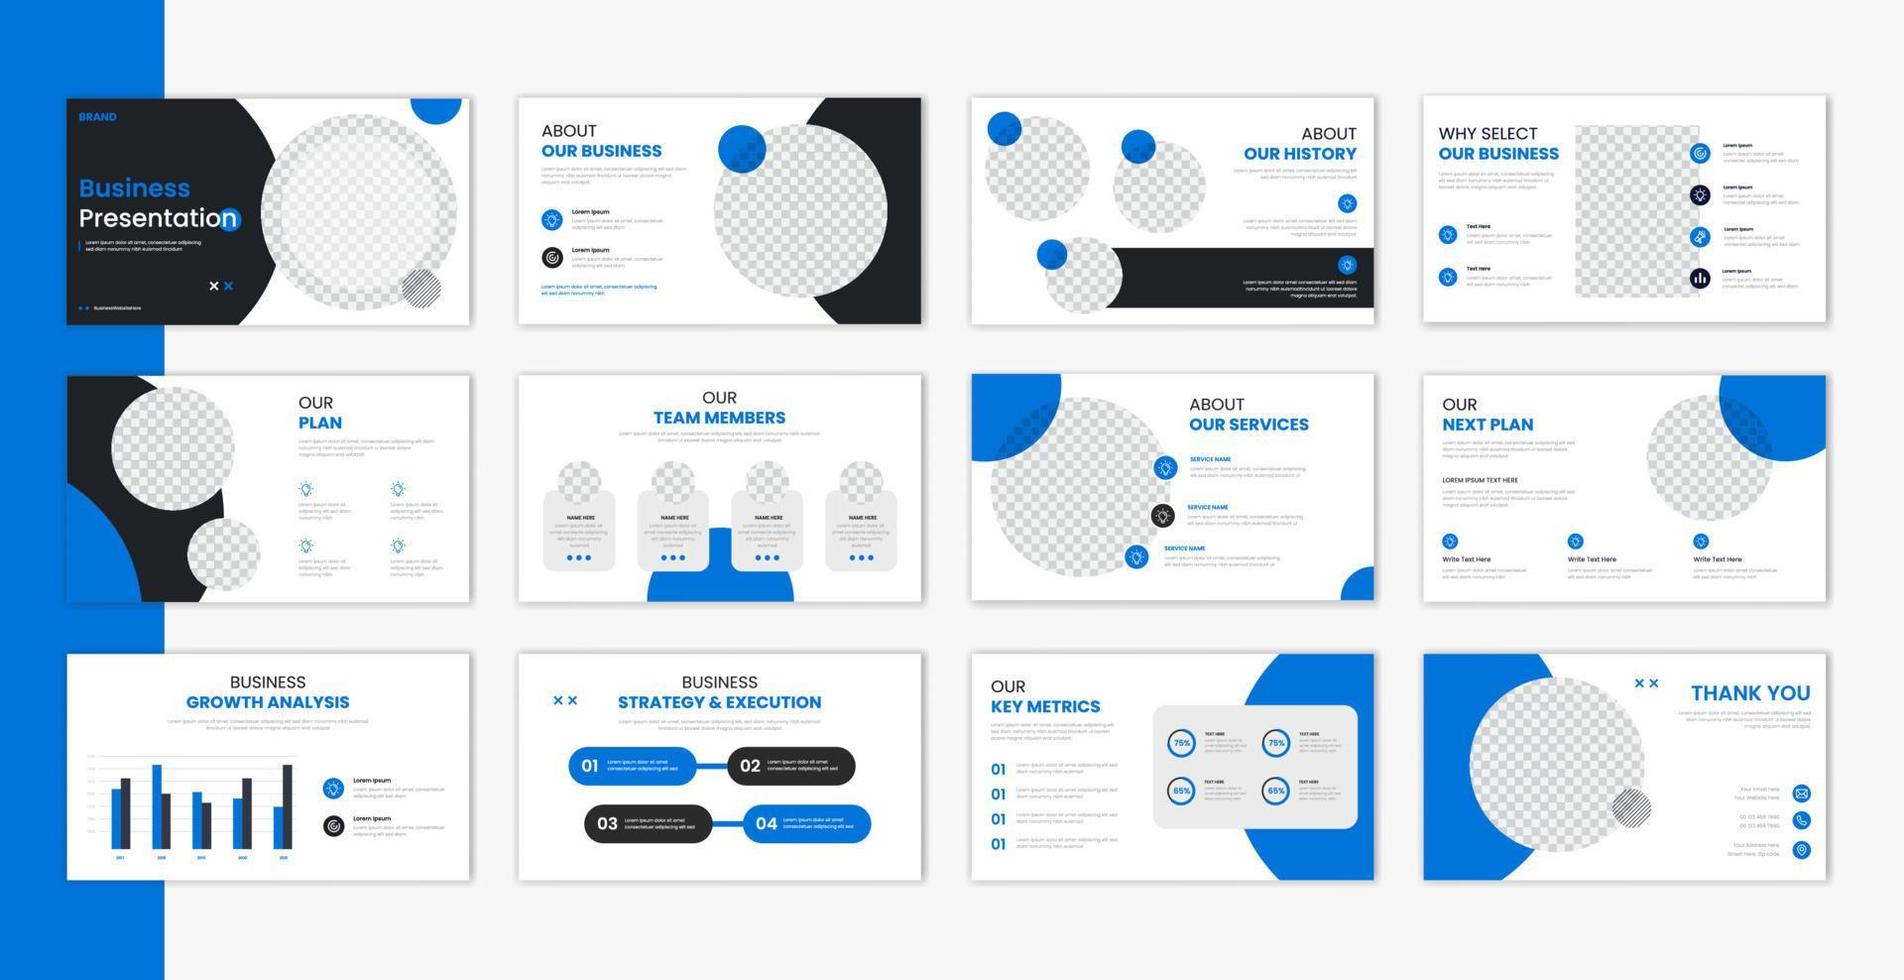 företags- mall presentation design och sida layout design, företag presentation bildspel för broschyr, företag profil, hemsida Rapportera, finansiera vektor